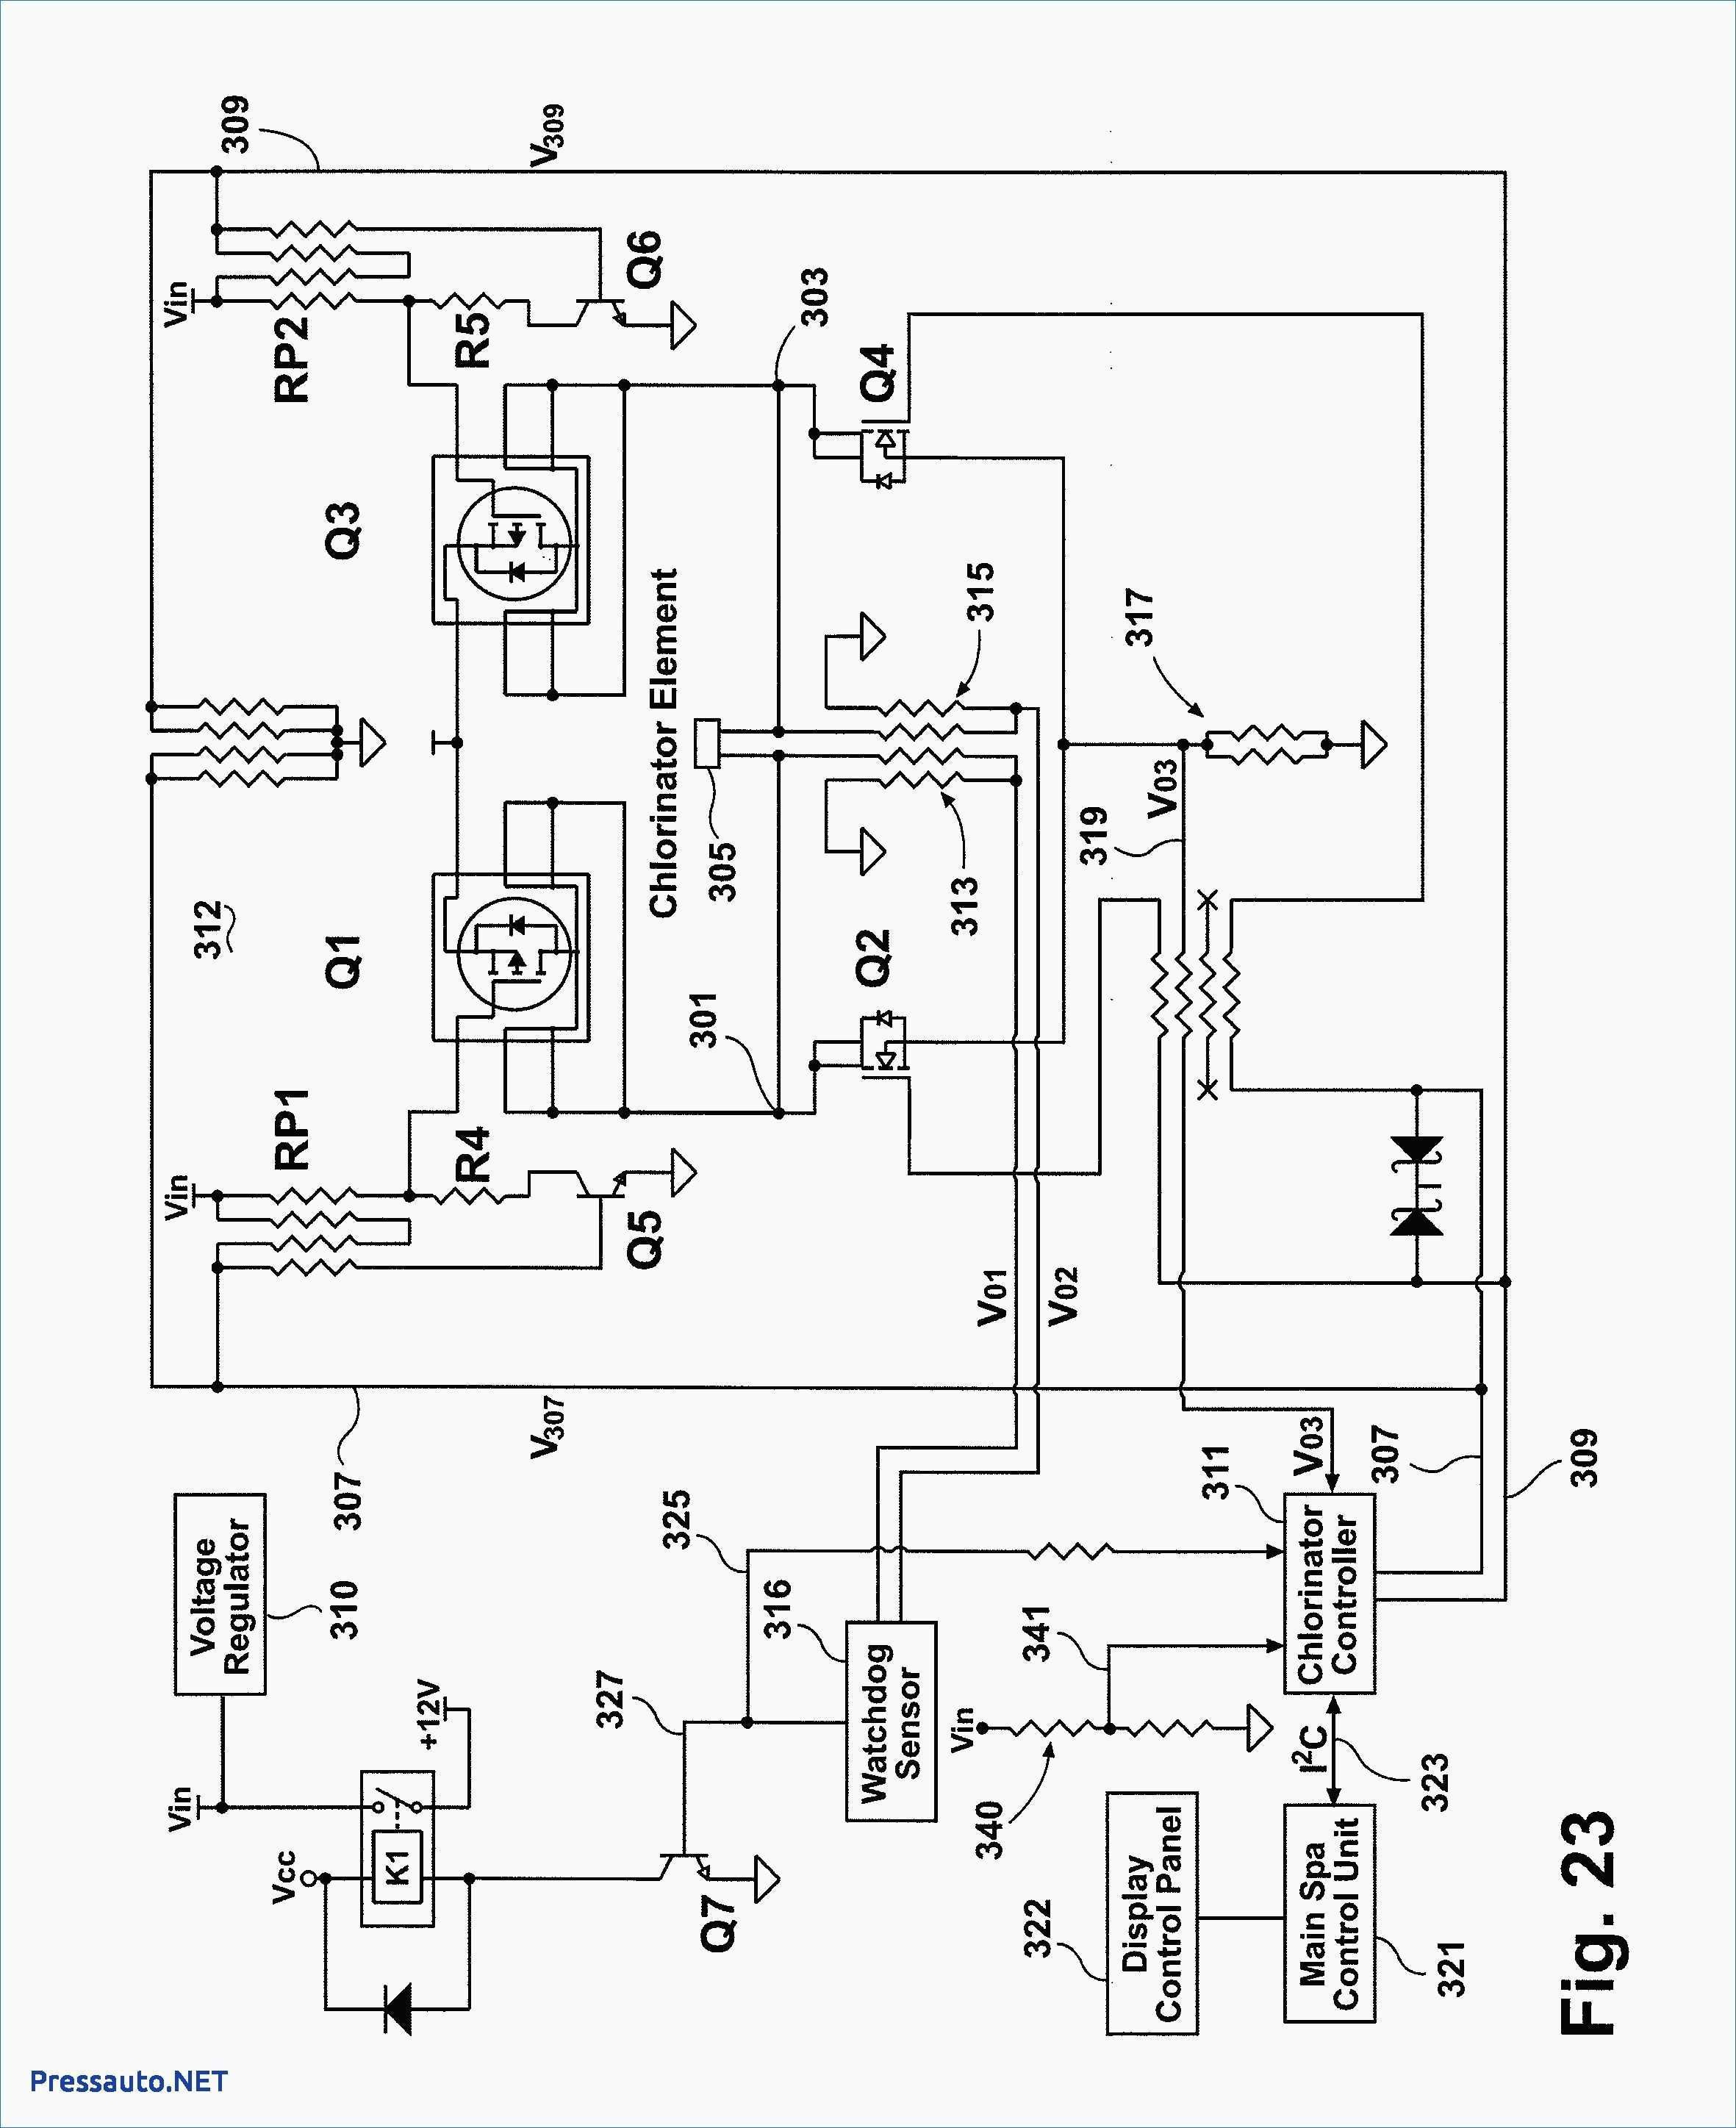 Hayward Super Pump 2 Parts Diagram Hayward Super Pump Wiring Diagram 230v Shahsramblings Of Hayward Super Pump 2 Parts Diagram